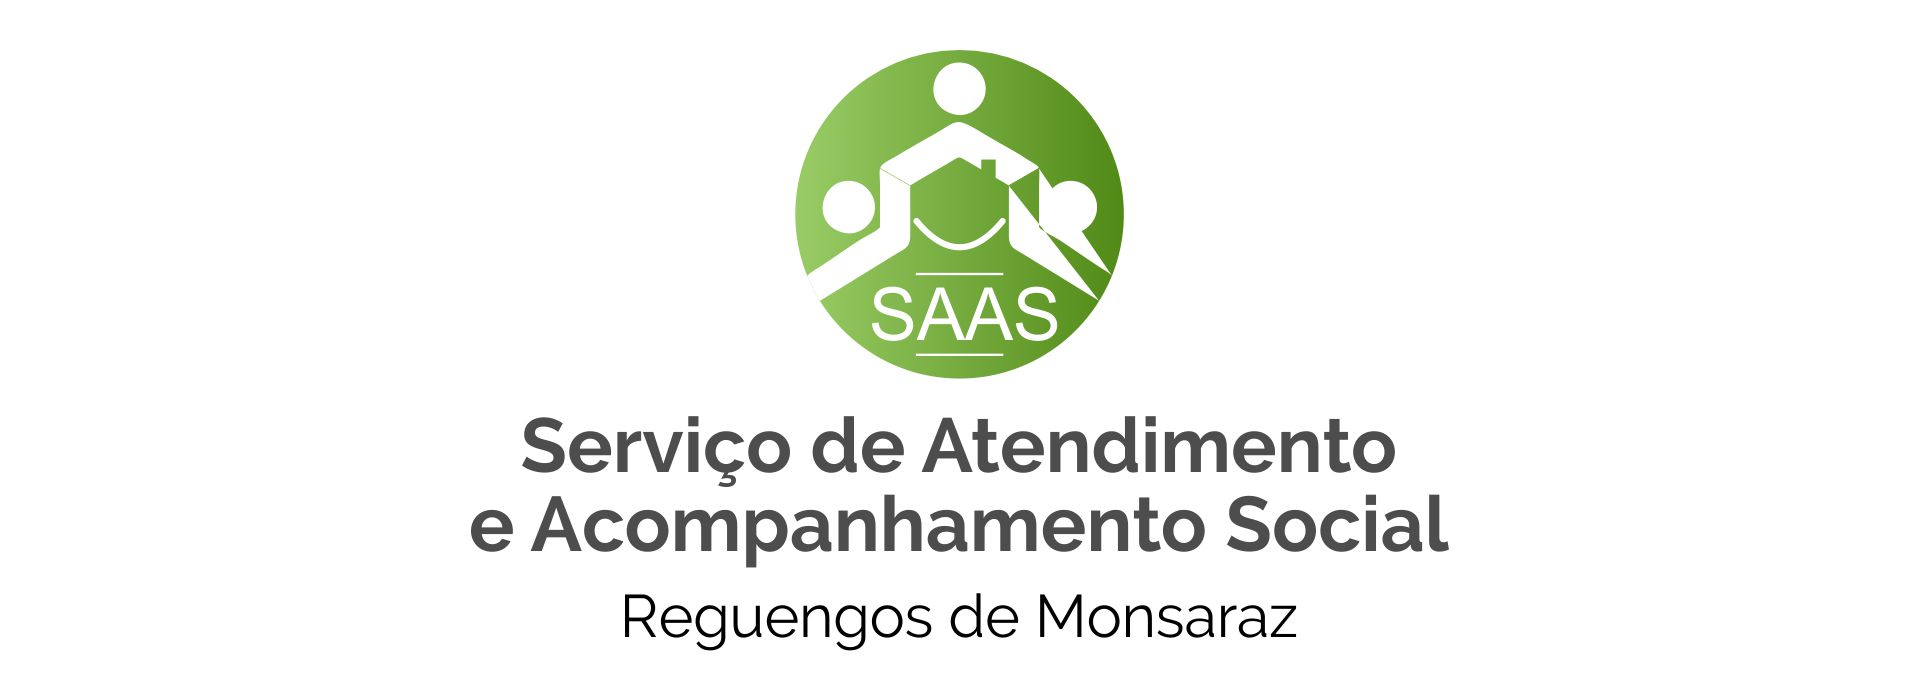 Serviço de Atendimento e Acompanhamento Social (SAAS)